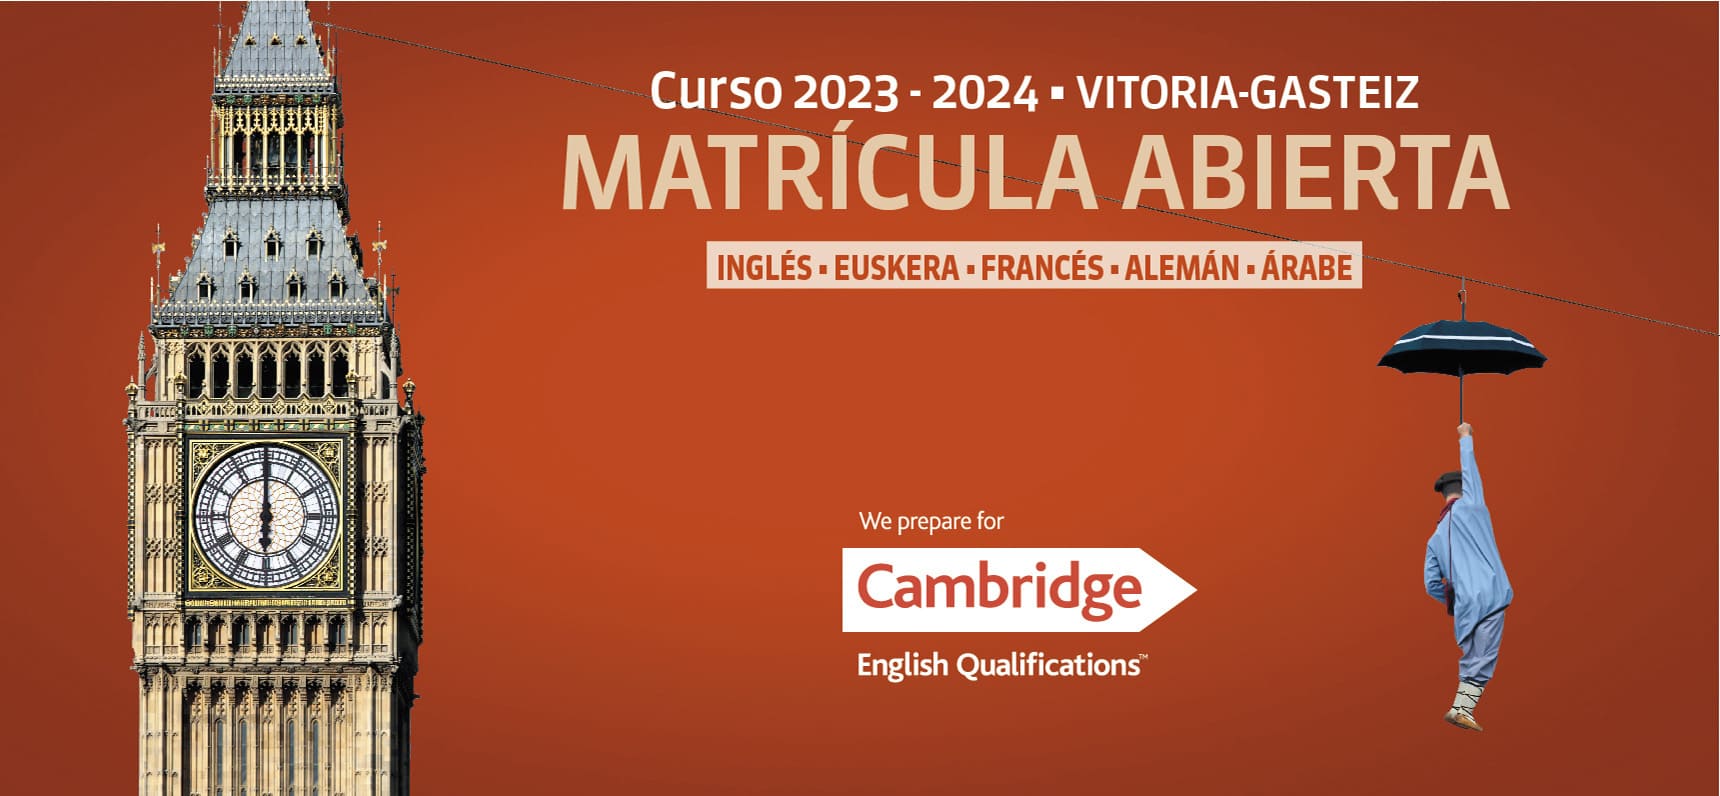 Curso 2023-2024 Vitoria-Gasteiz, Matrícula Abierta, Inglés, Euskera, Francés, Alemán, Arabe